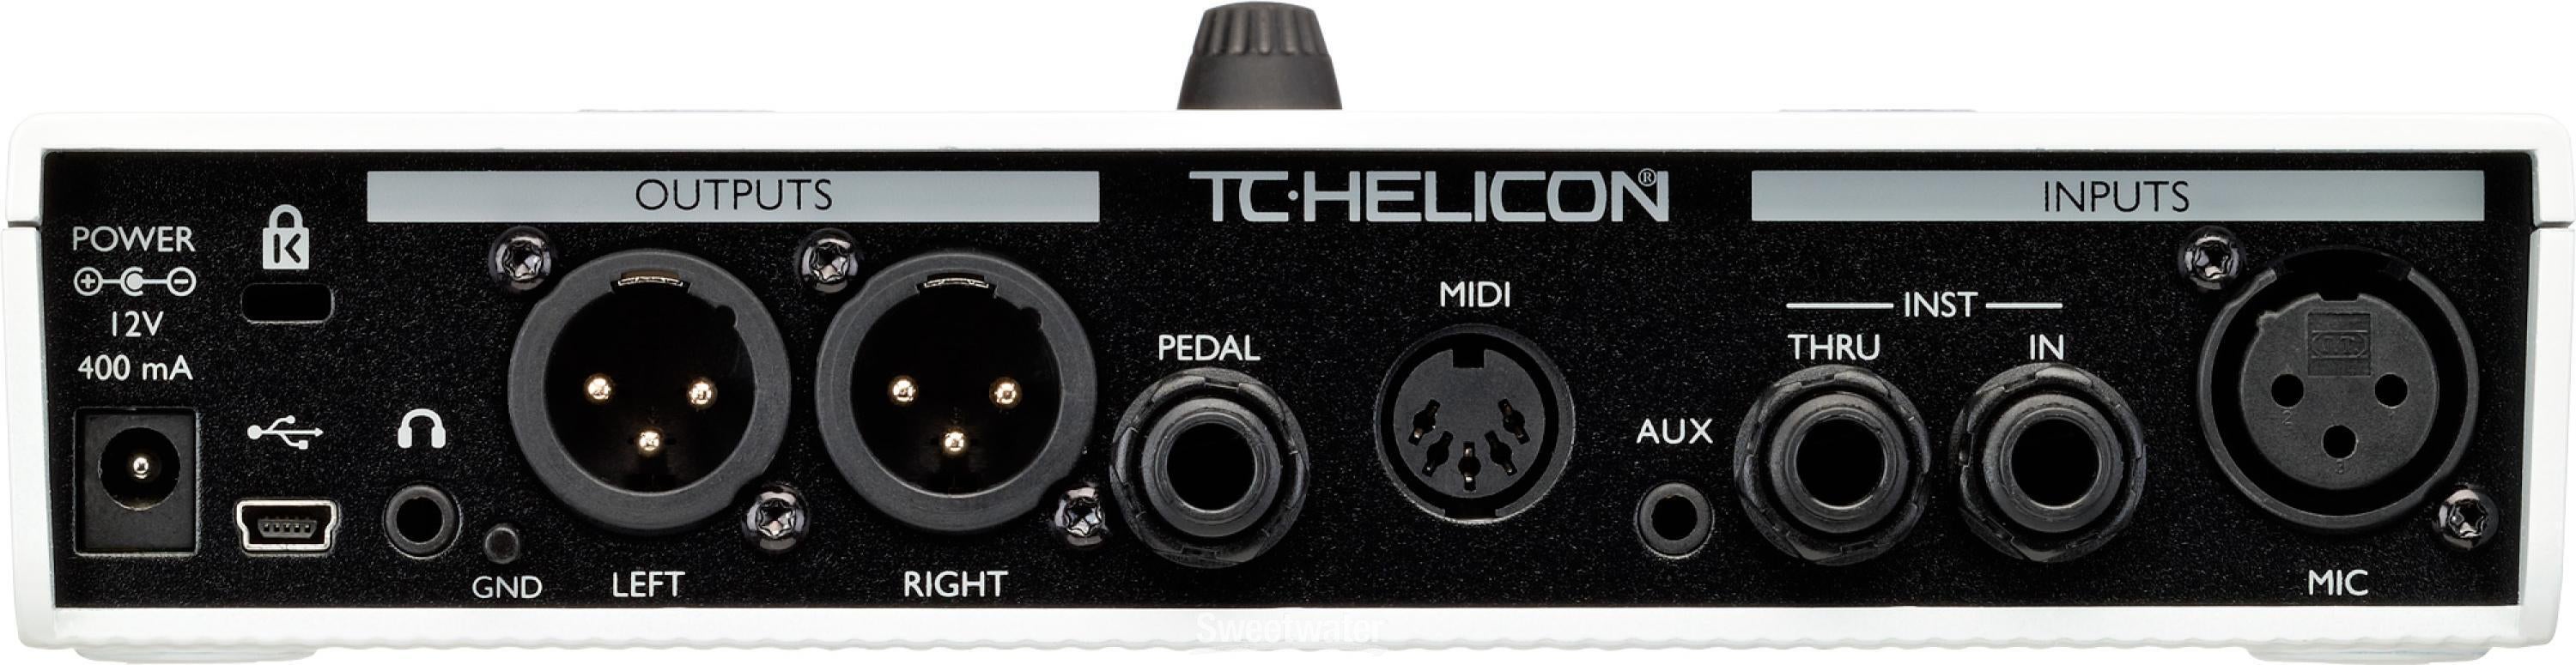 TC-HELICON VoiceLive Play GTX商品参考ホームページ